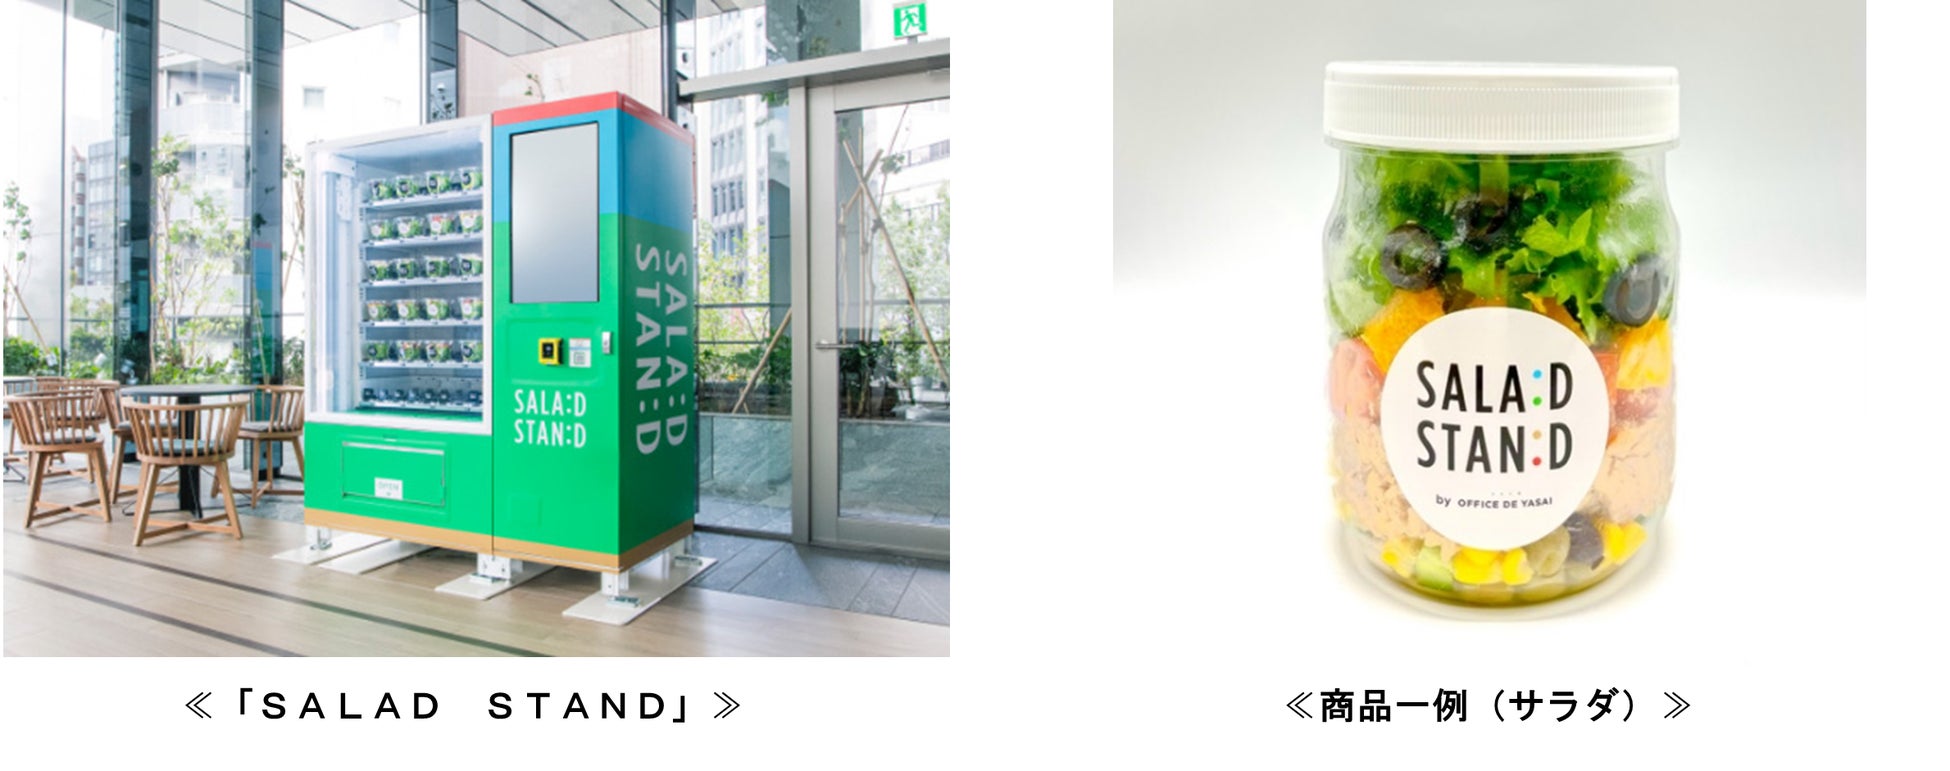 京王井の頭線渋谷駅に自動販売機「ＳＡＬＡＤ　ＳＴＡＮＤ」を設置しサラダ等を販売する実証実験を実施します！